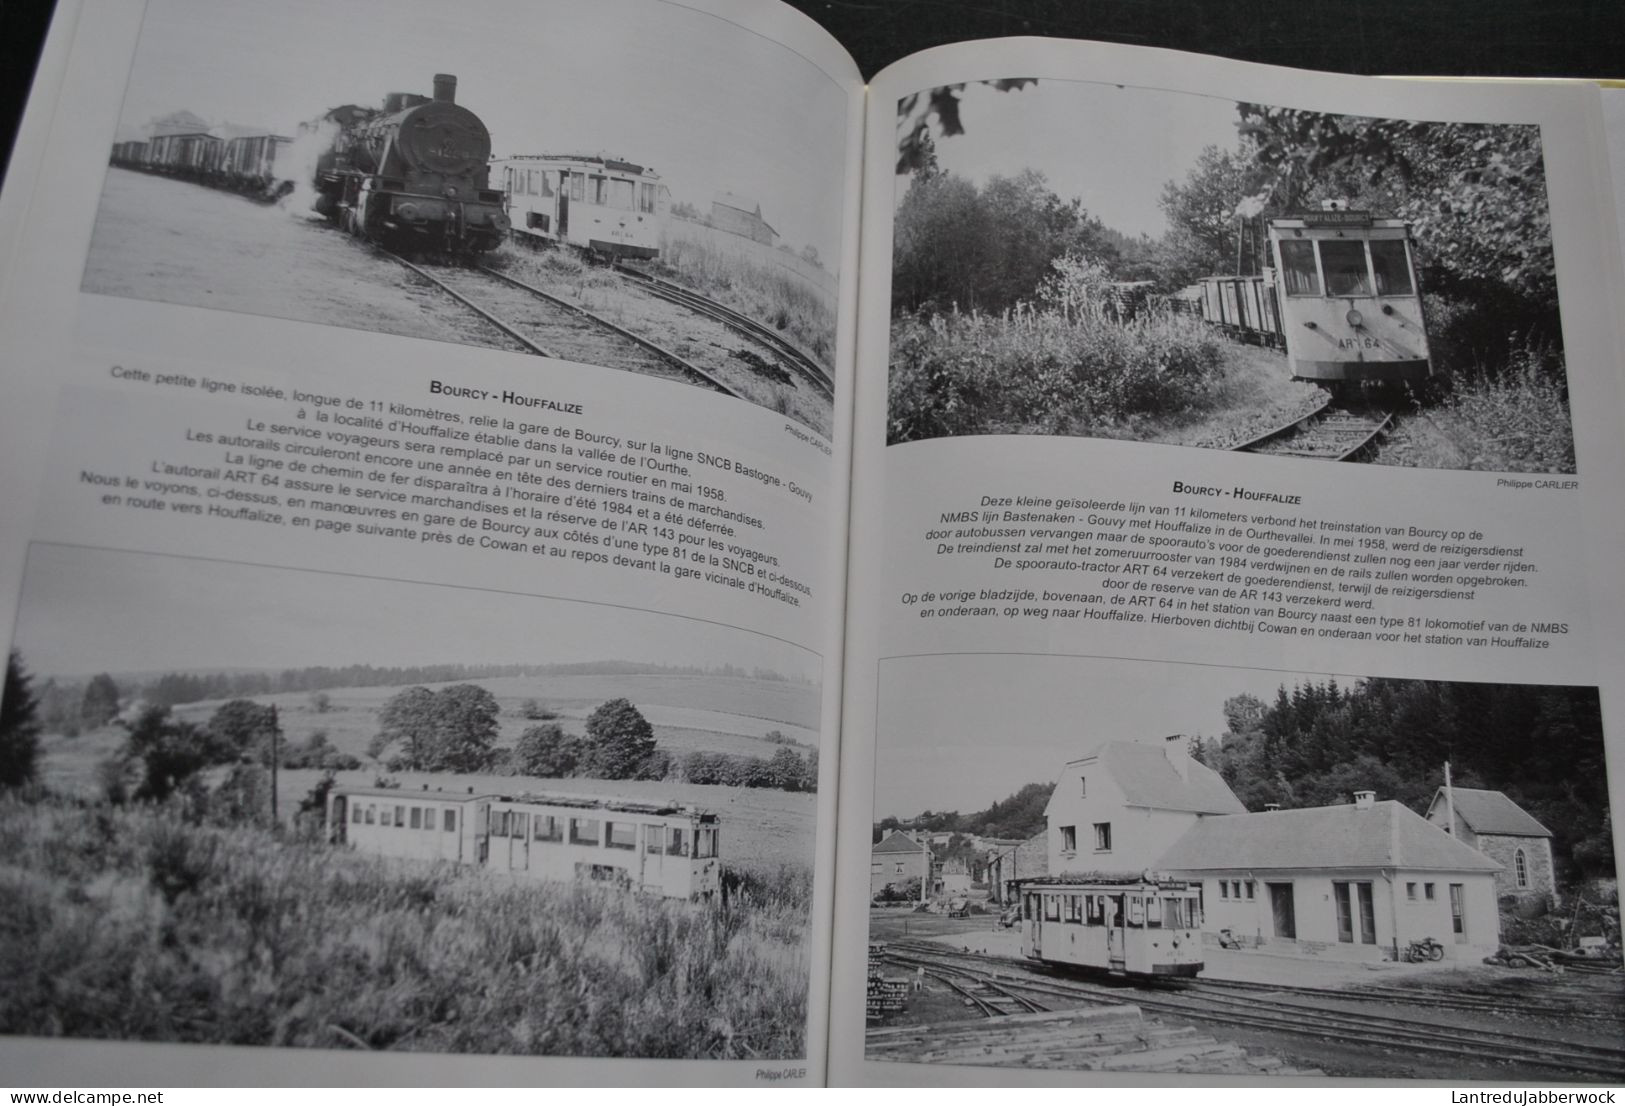 Balade vicinale en Belgique Tramreis door Belgie 1950 1975 Editions du Cabri Collection Images ferroviaires NMVB SNCV